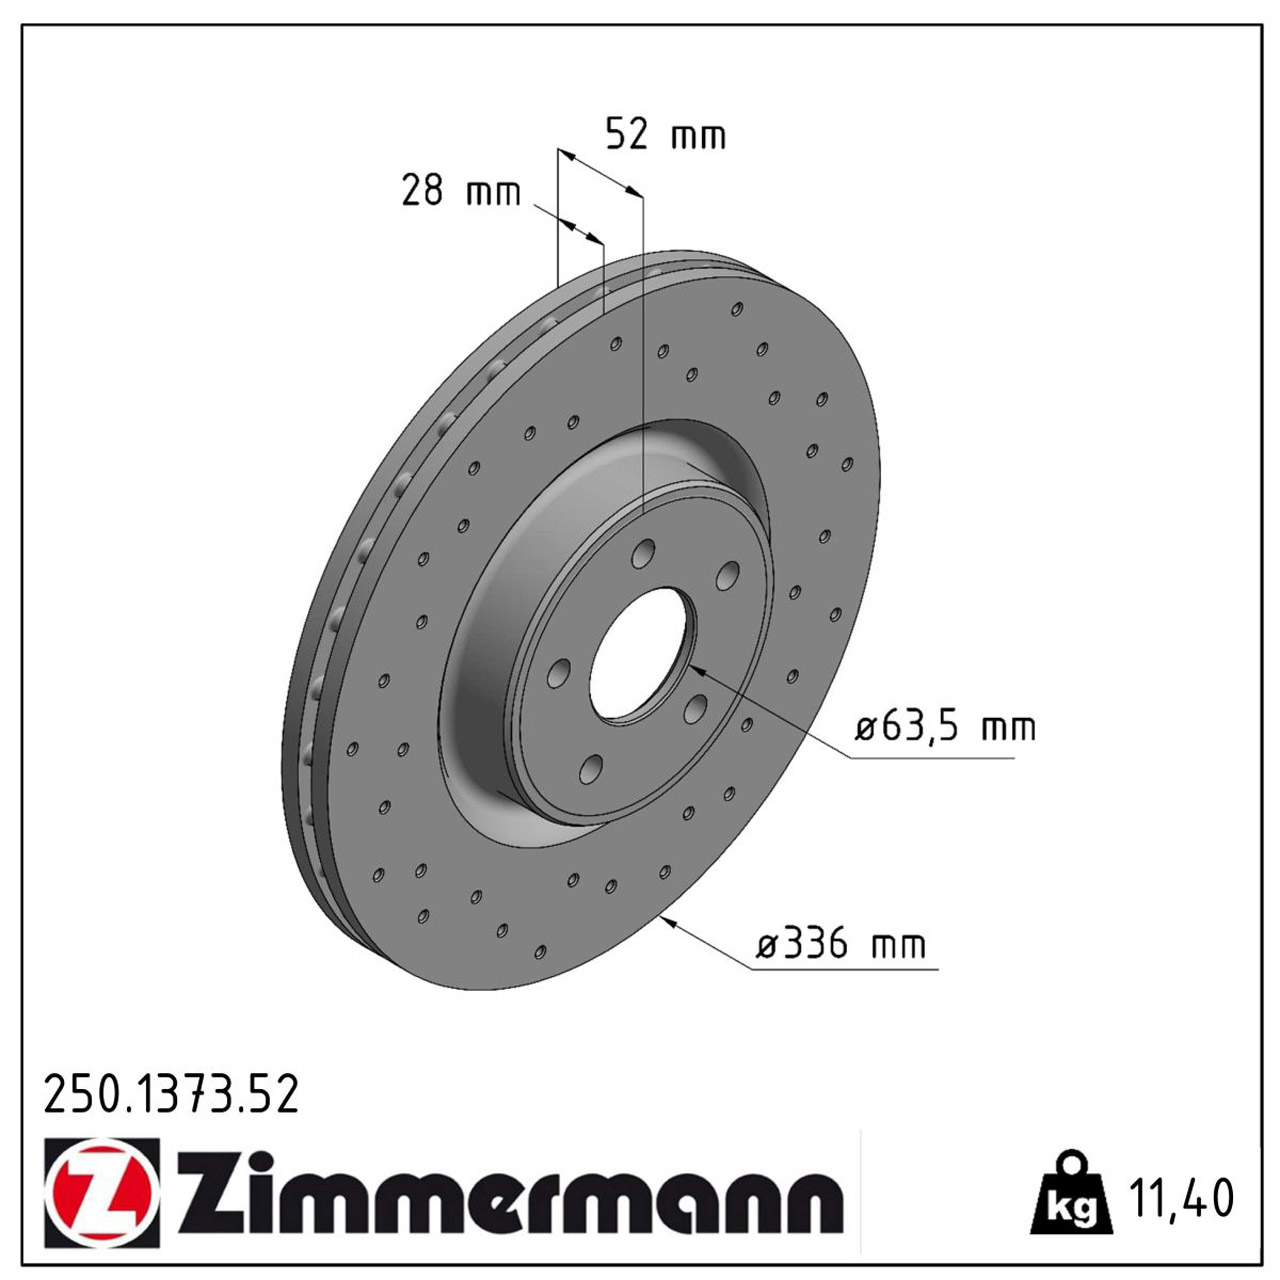 Zimmermann SPORT Bremsscheiben + Bremsbeläge FORD Focus 2 MK2 2.5 RS 305 PS vorne